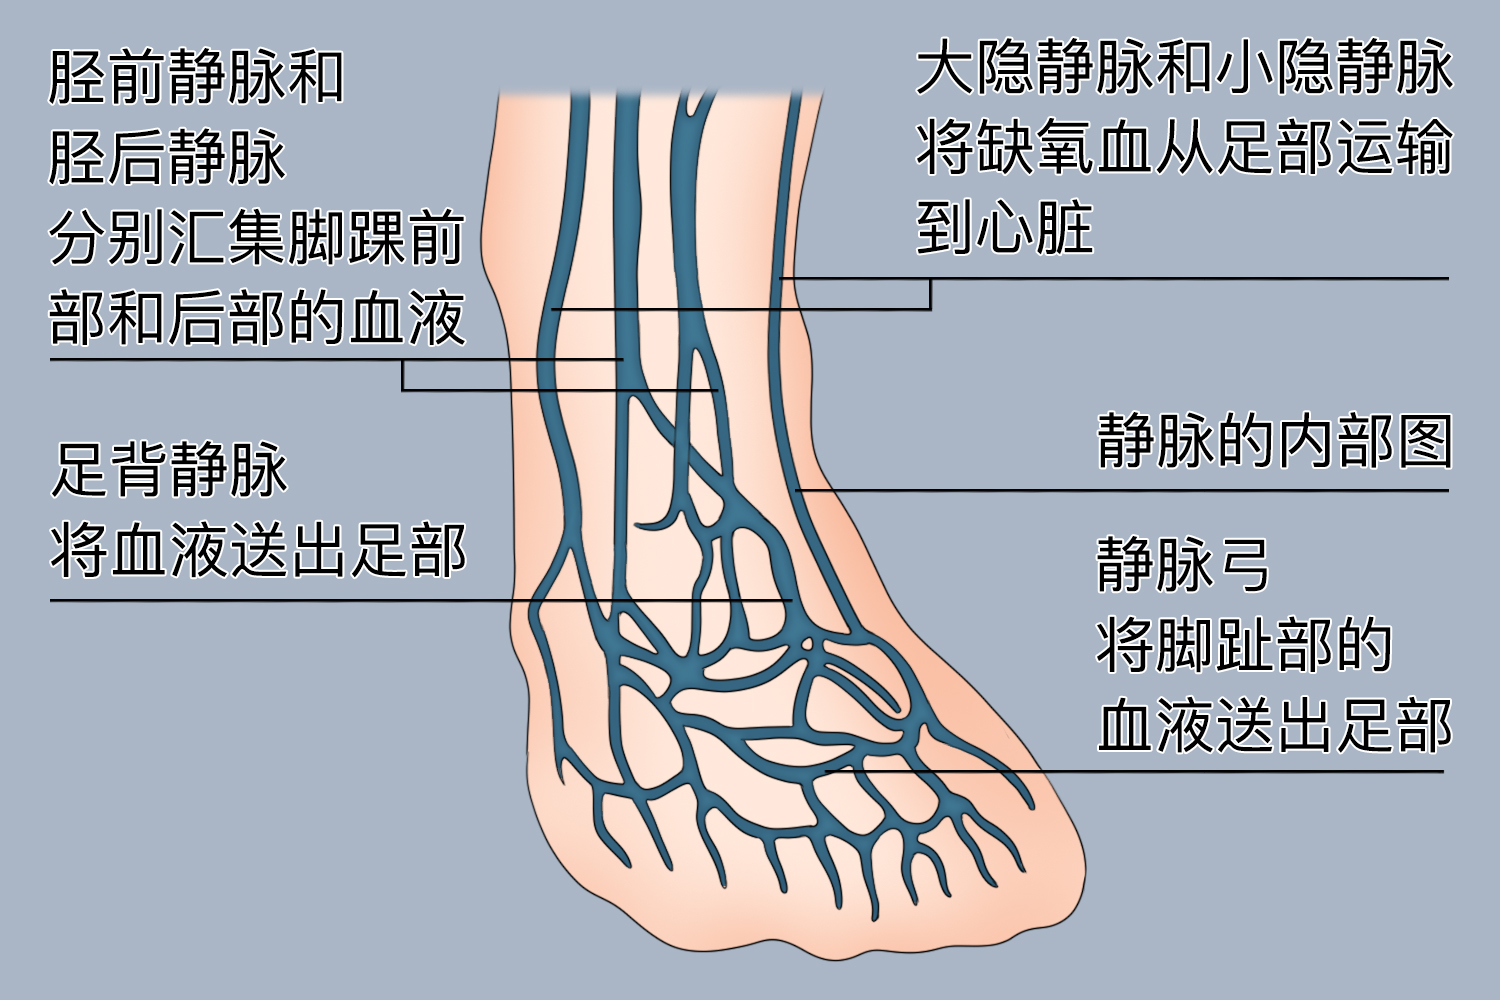 足部深静脉图功能足部动脉弓和动脉网对足部的血液循环供应起着决定性